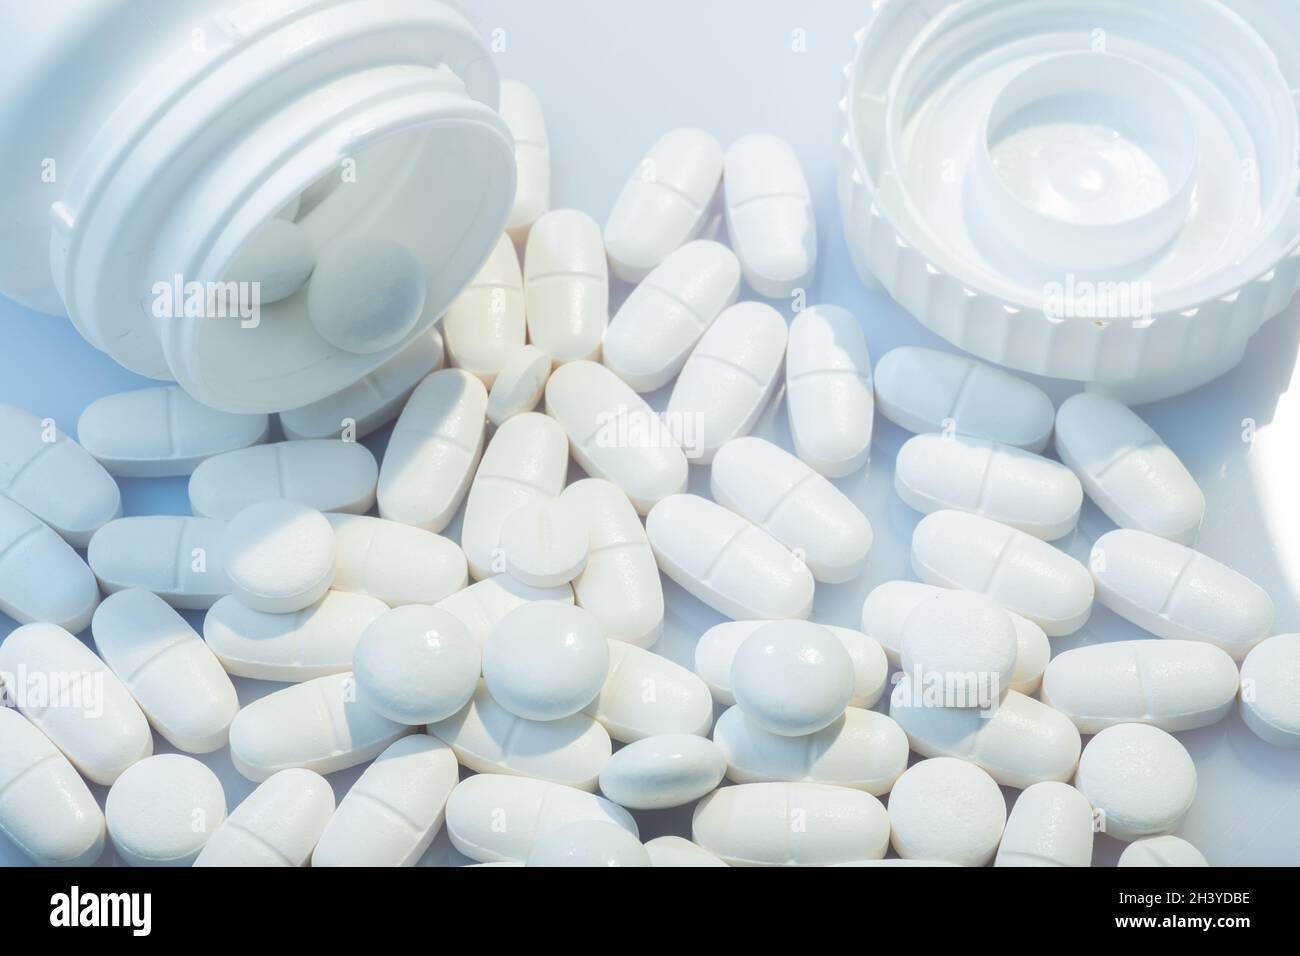 Helsinki / Finnland - 31. OKTOBER 2021: Nahaufnahme von weißen Pillen vor weißem Hintergrund. Weißer Pillenbehälter im Hintergrund. Stockfoto